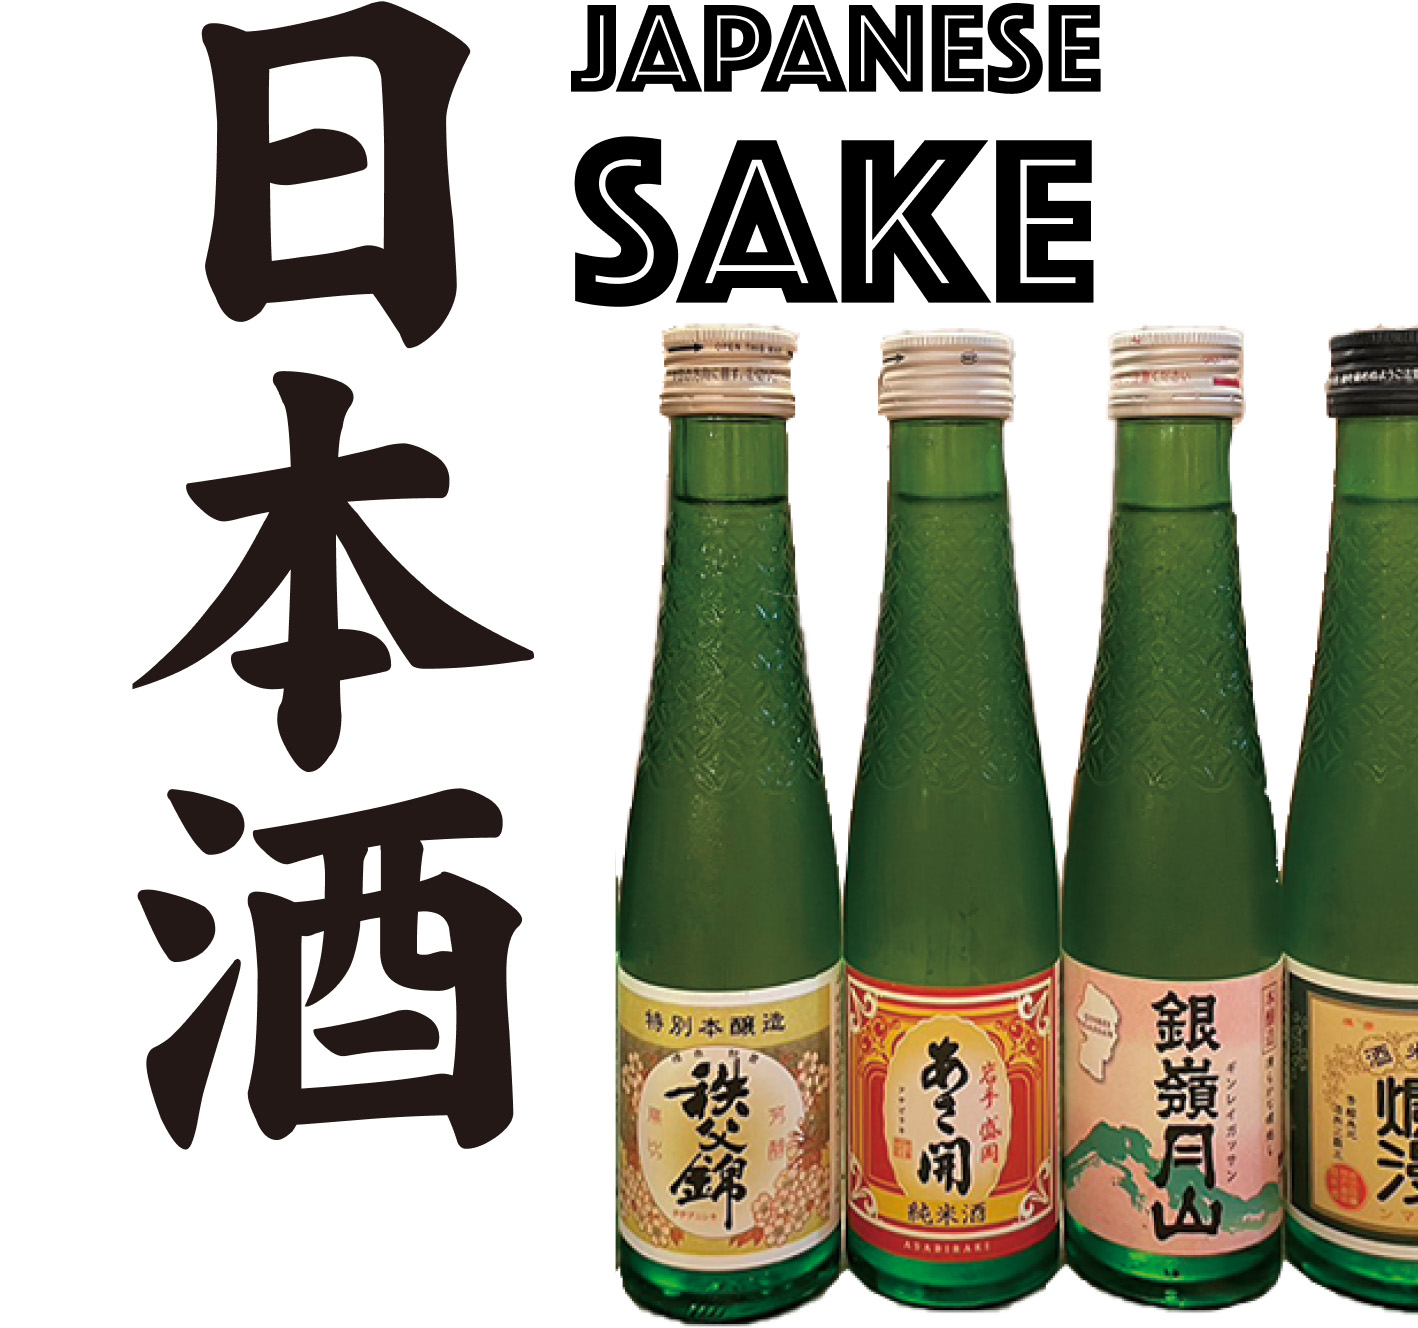 JAPANESE SAKE 日本酒